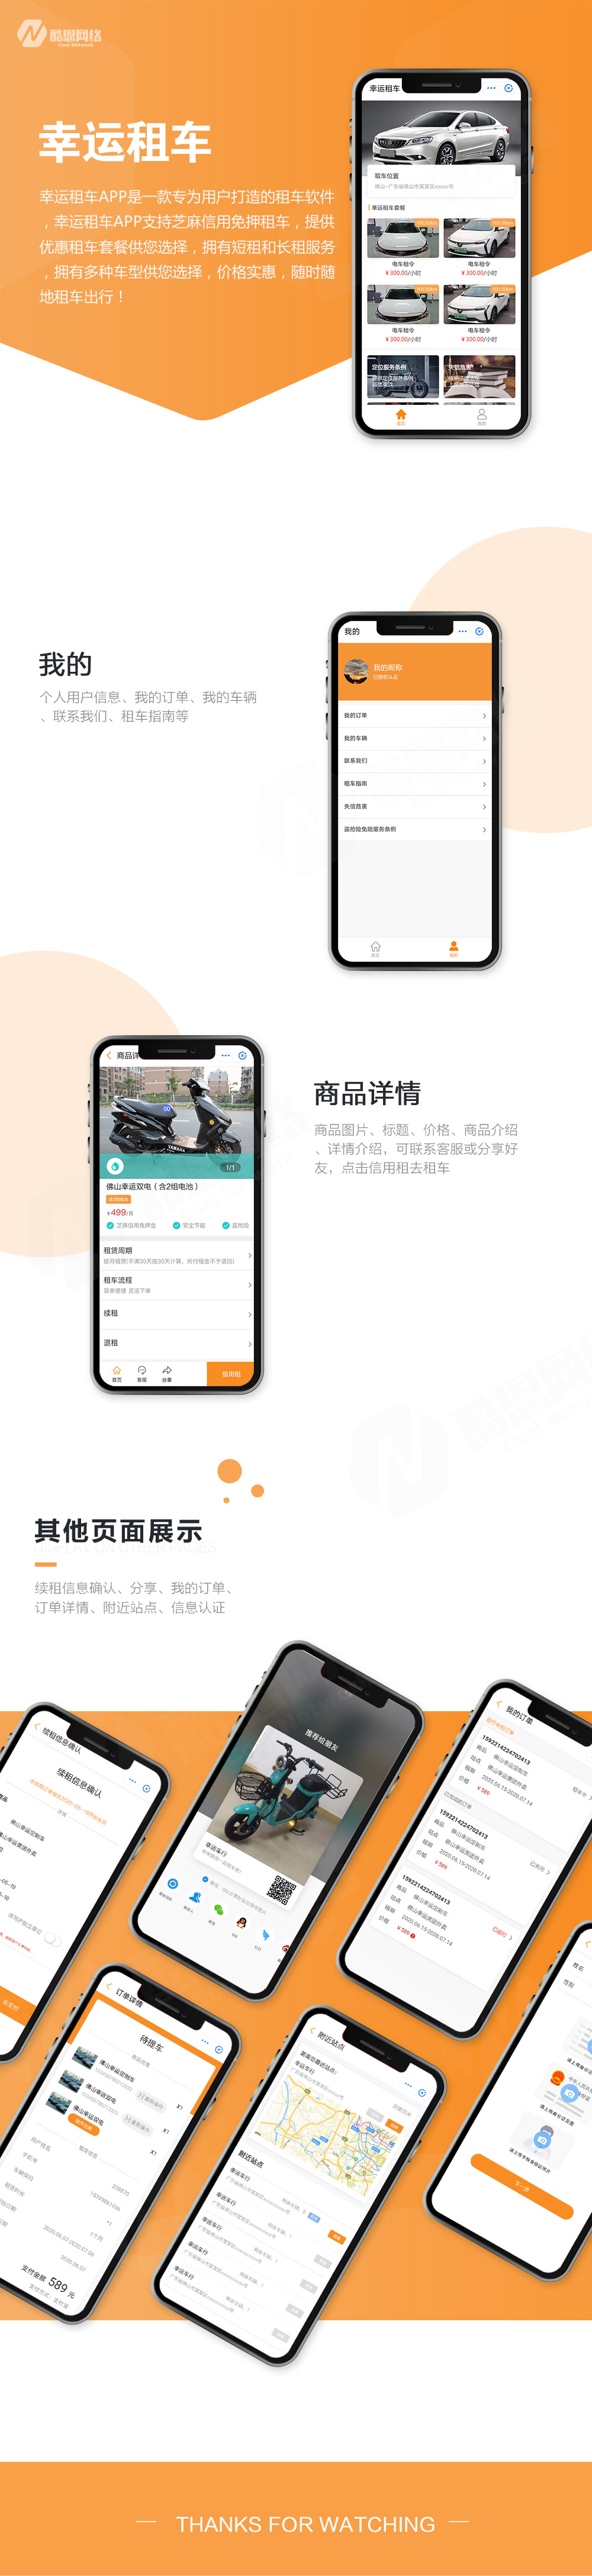 案例展示-幸运租车app.jpg